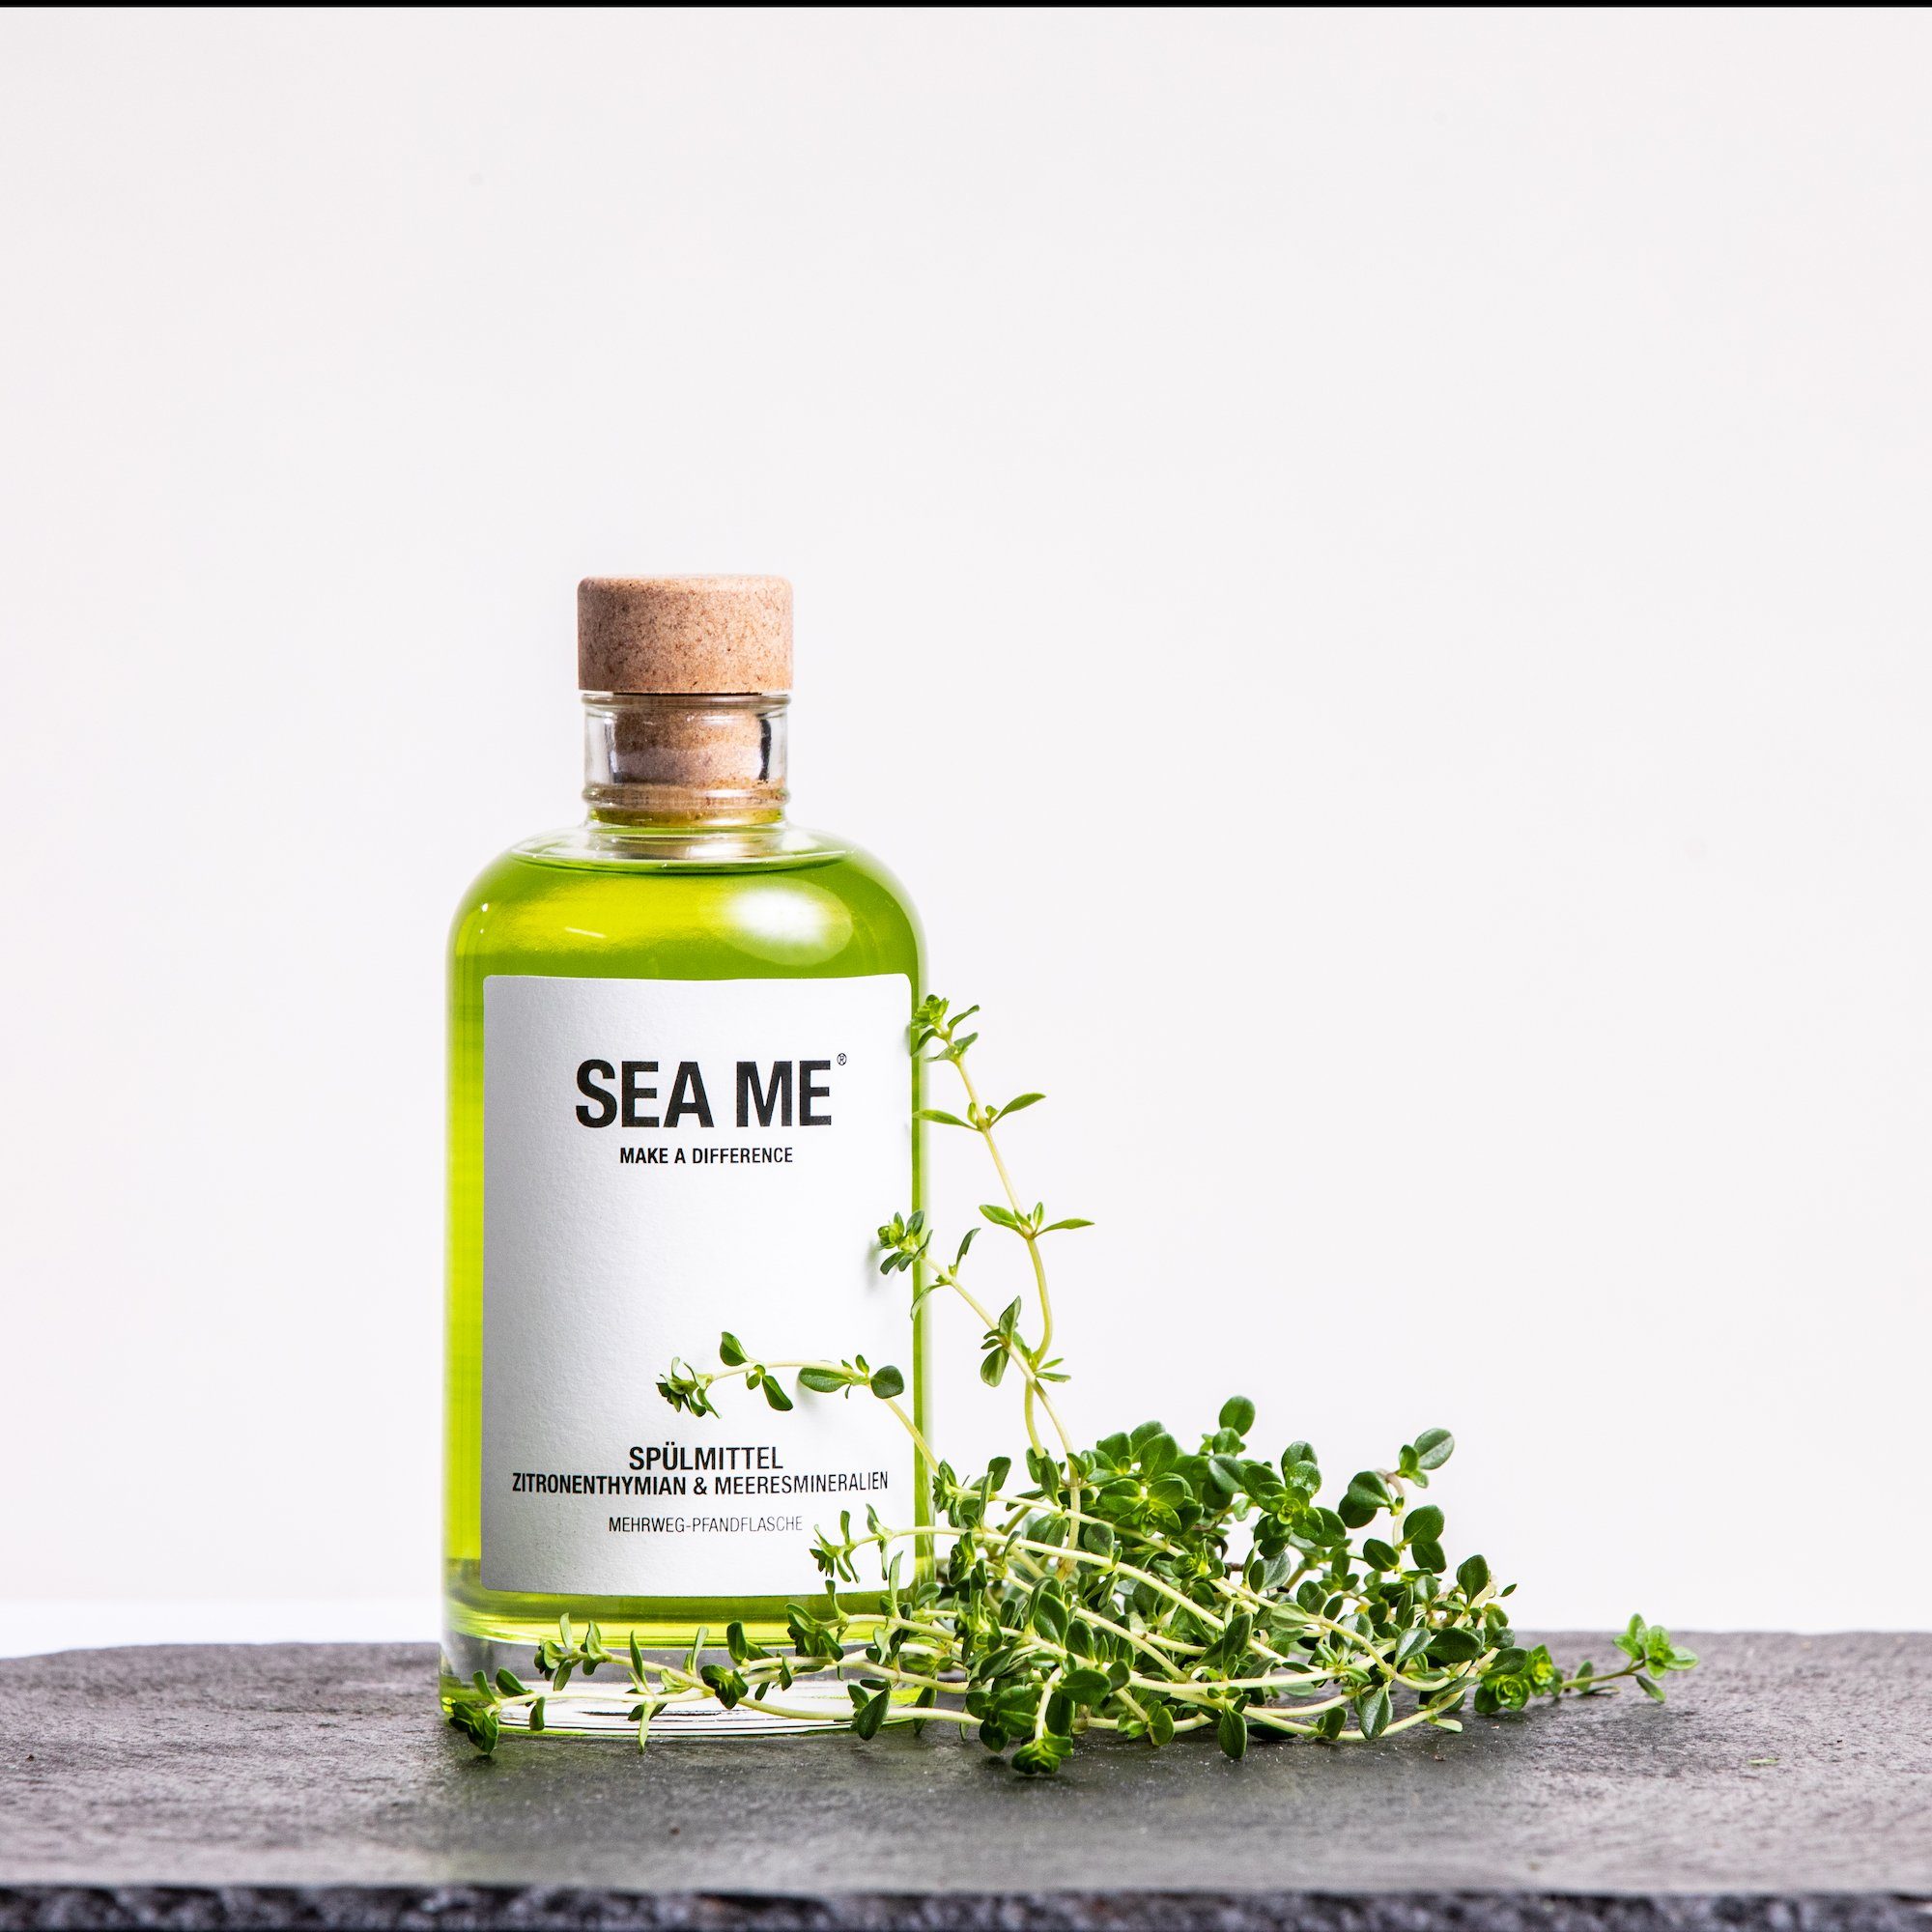 SEA ME Spülmittel, vegan, im Mehrweg-Glas, mit Zitronenthymian, 250ml Geschirrspülmittel